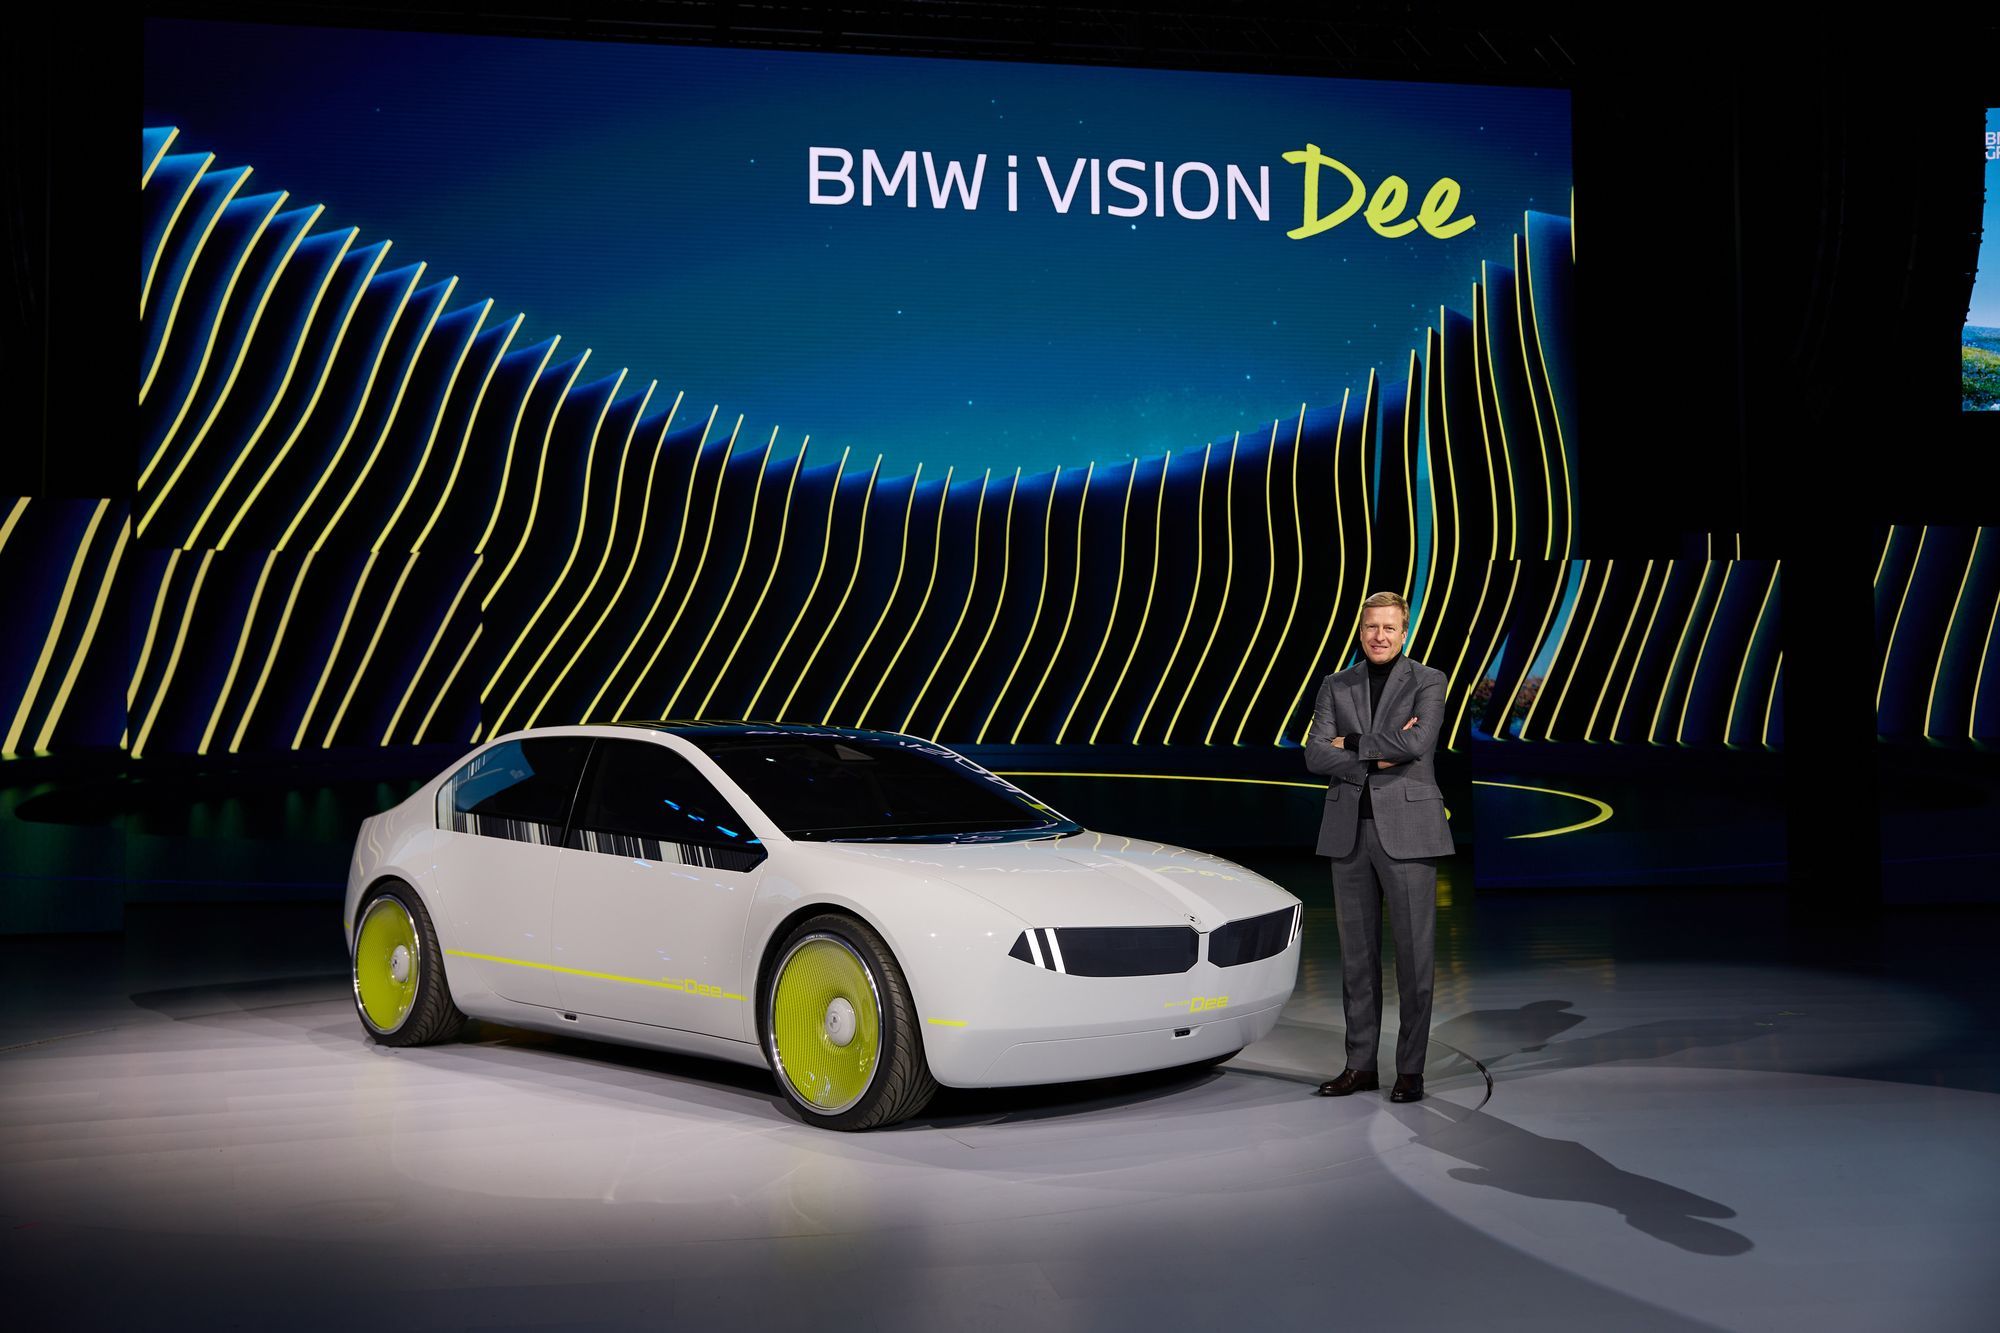 BMW i 数字情感交互概念车（Dee）亮相 配备平视显示系统